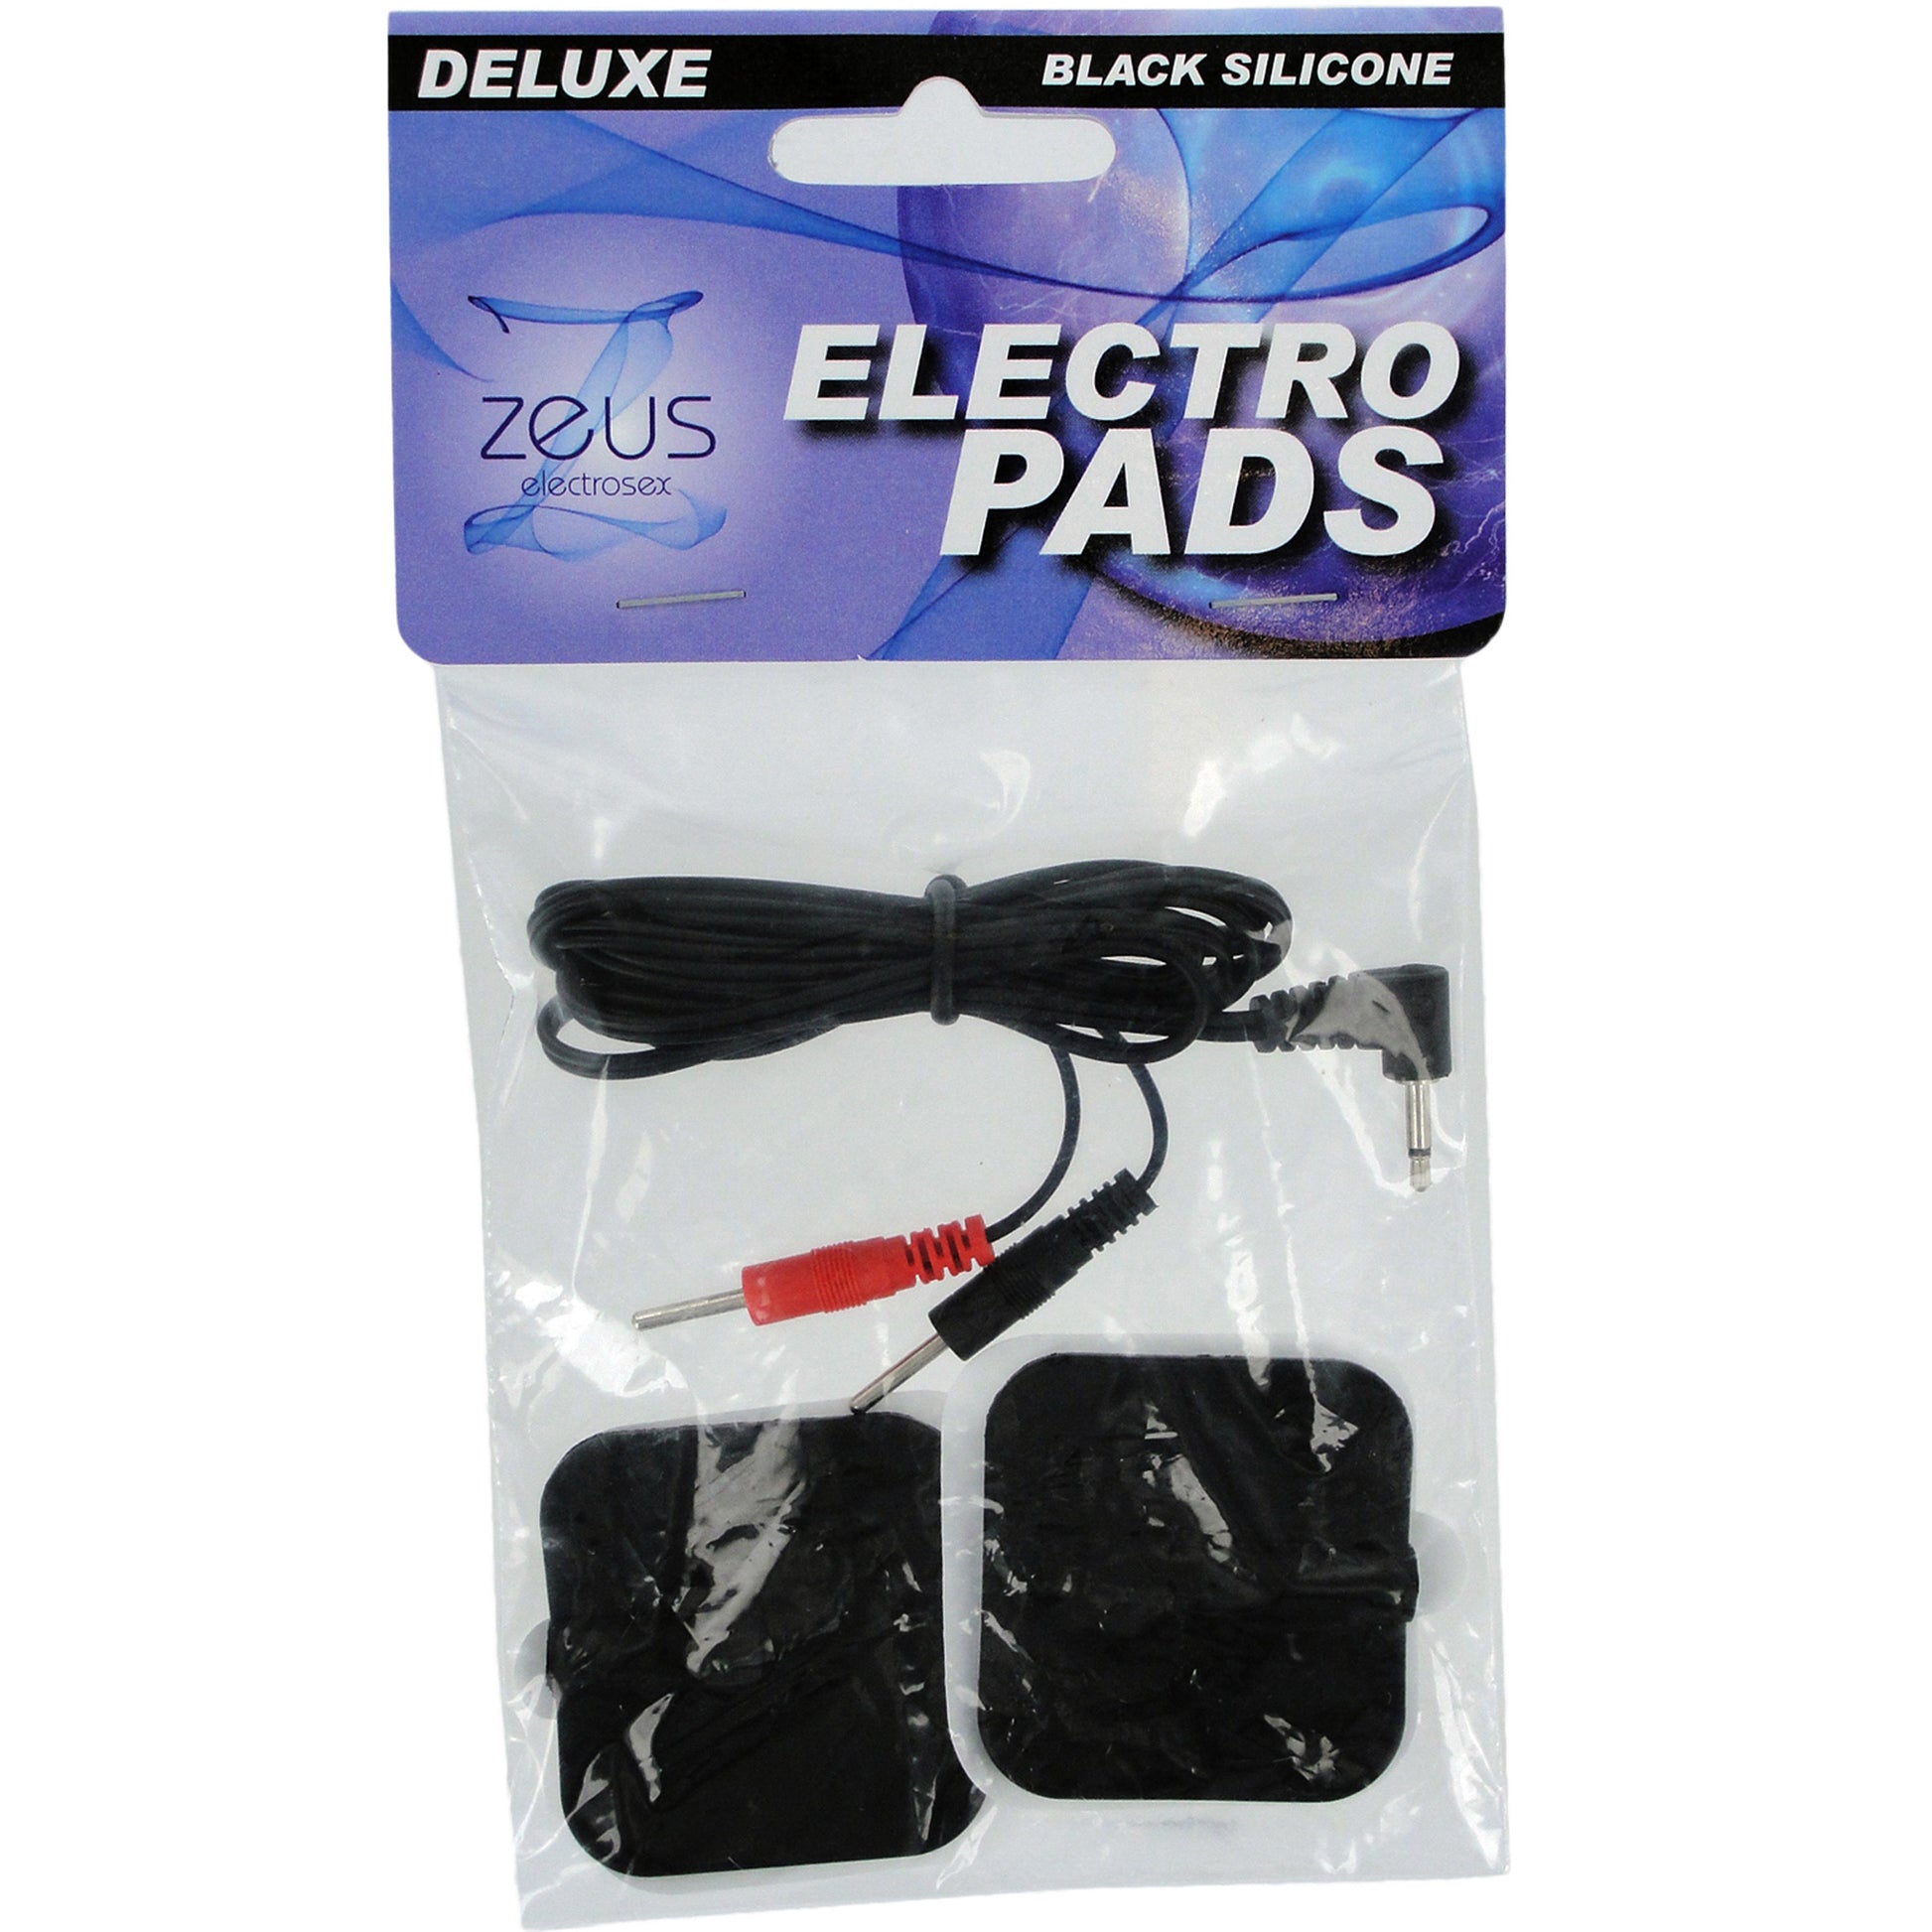 Zeus Deluxe Silicone Black Electro Pads - UABDSM